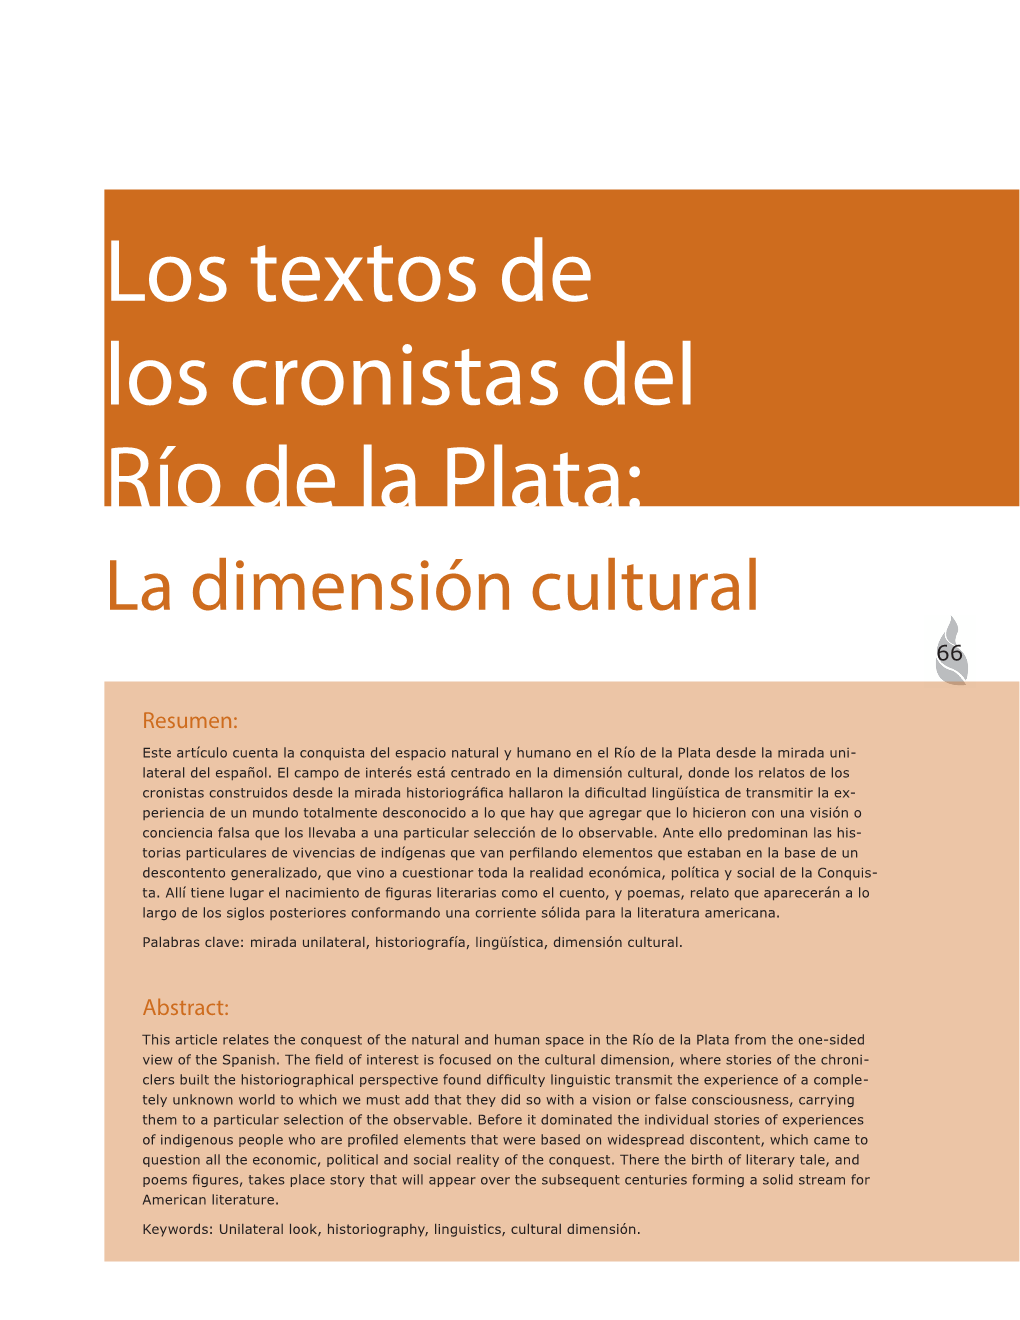 Los Textos De Los Cronistas Del Río De La Plata: La Dimensión Cultural 66